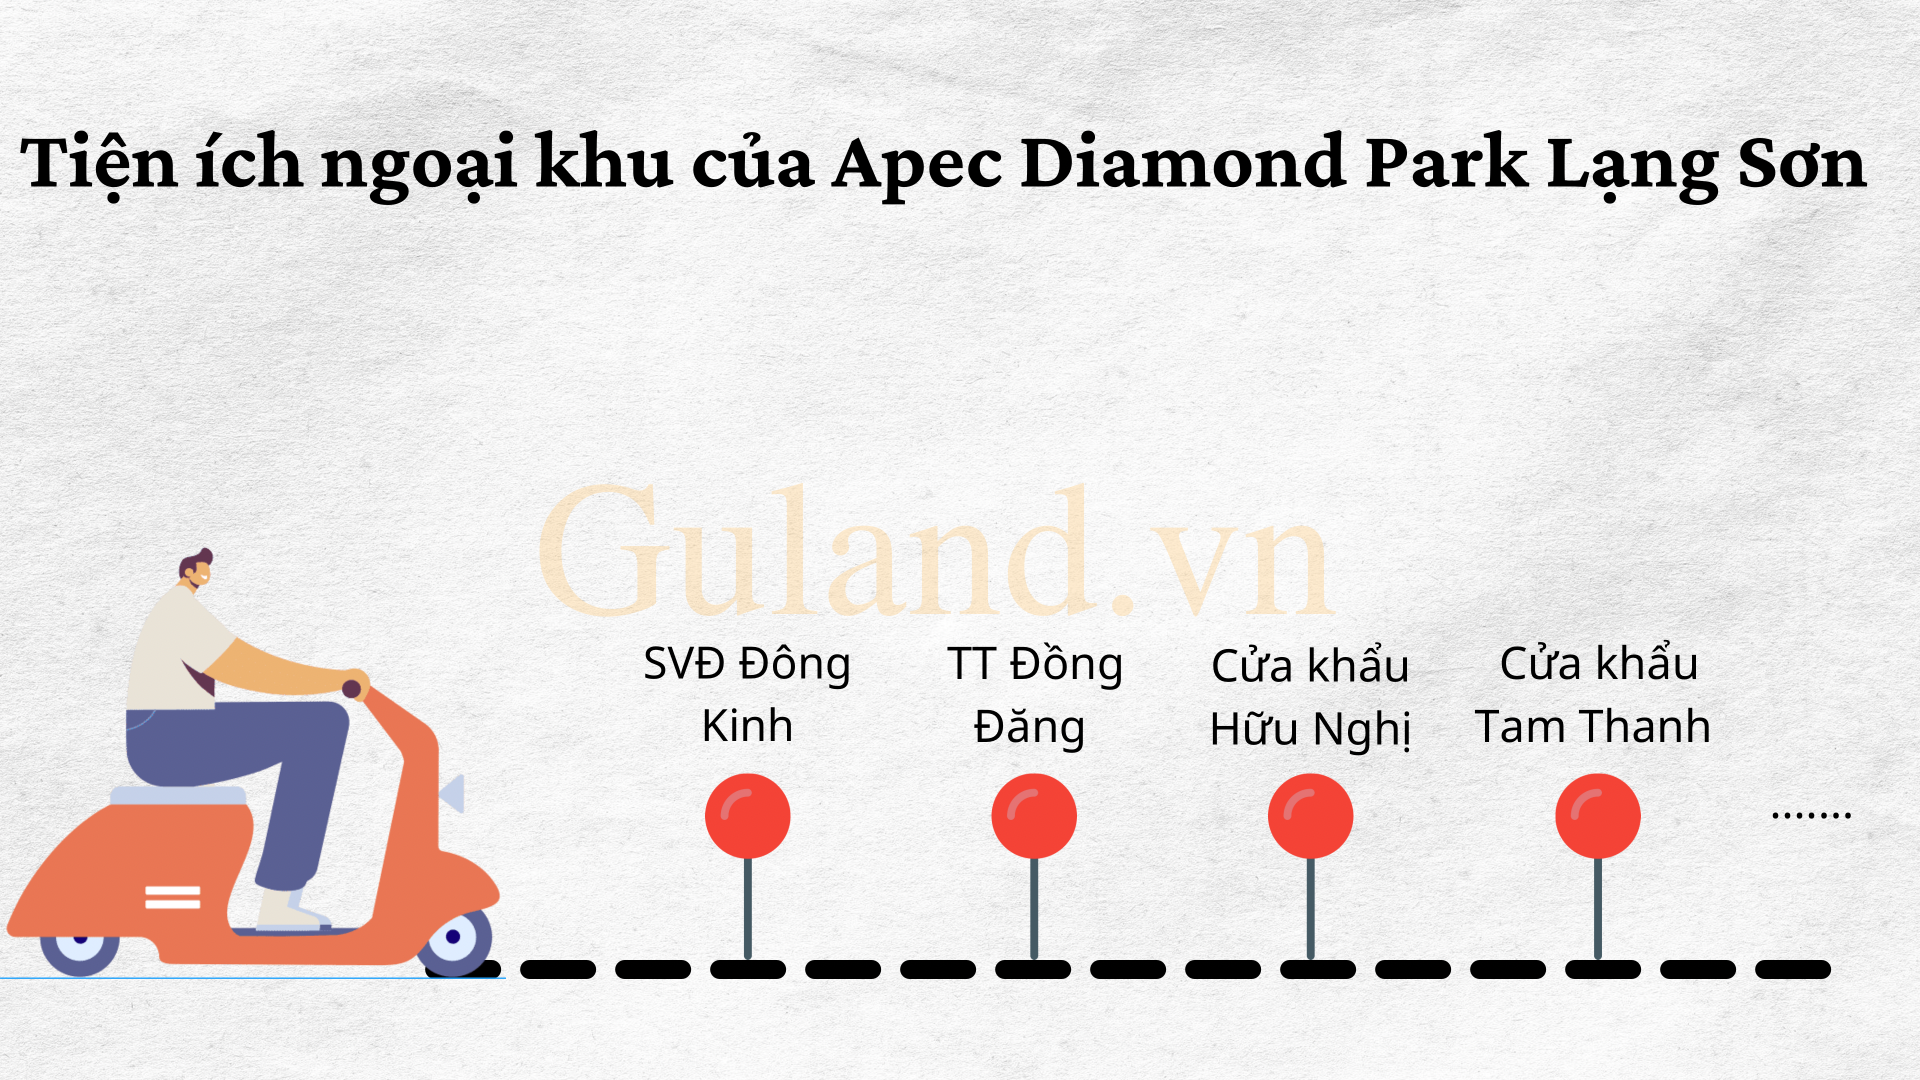 Liên kết vùng đa dạng của Apec Diamond Park Lạng Sơn